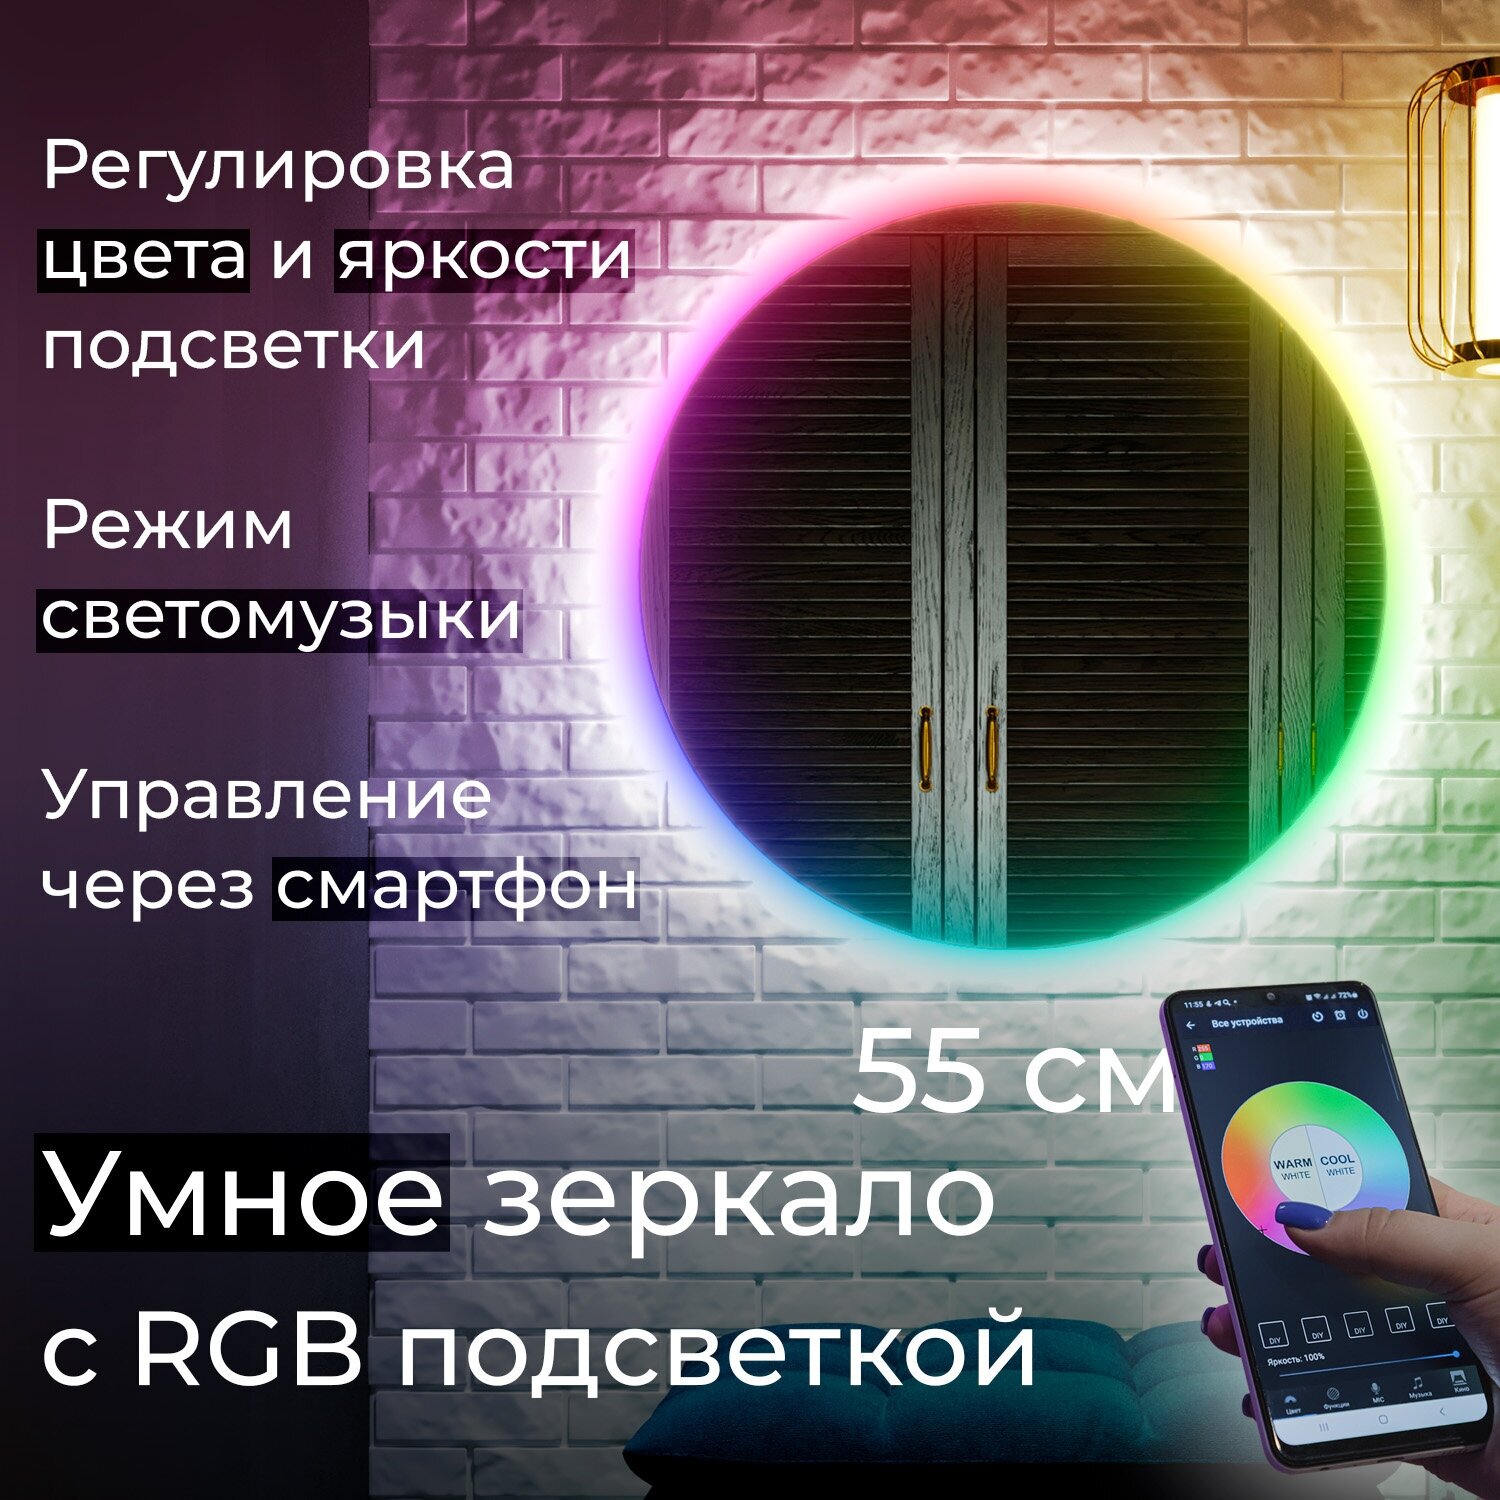 Зеркало с цветной подсветкой Vollmond RGB d550 55см круглое, управление с телефона или через умный дом, диммер (регулировка яркости) - фотография № 1